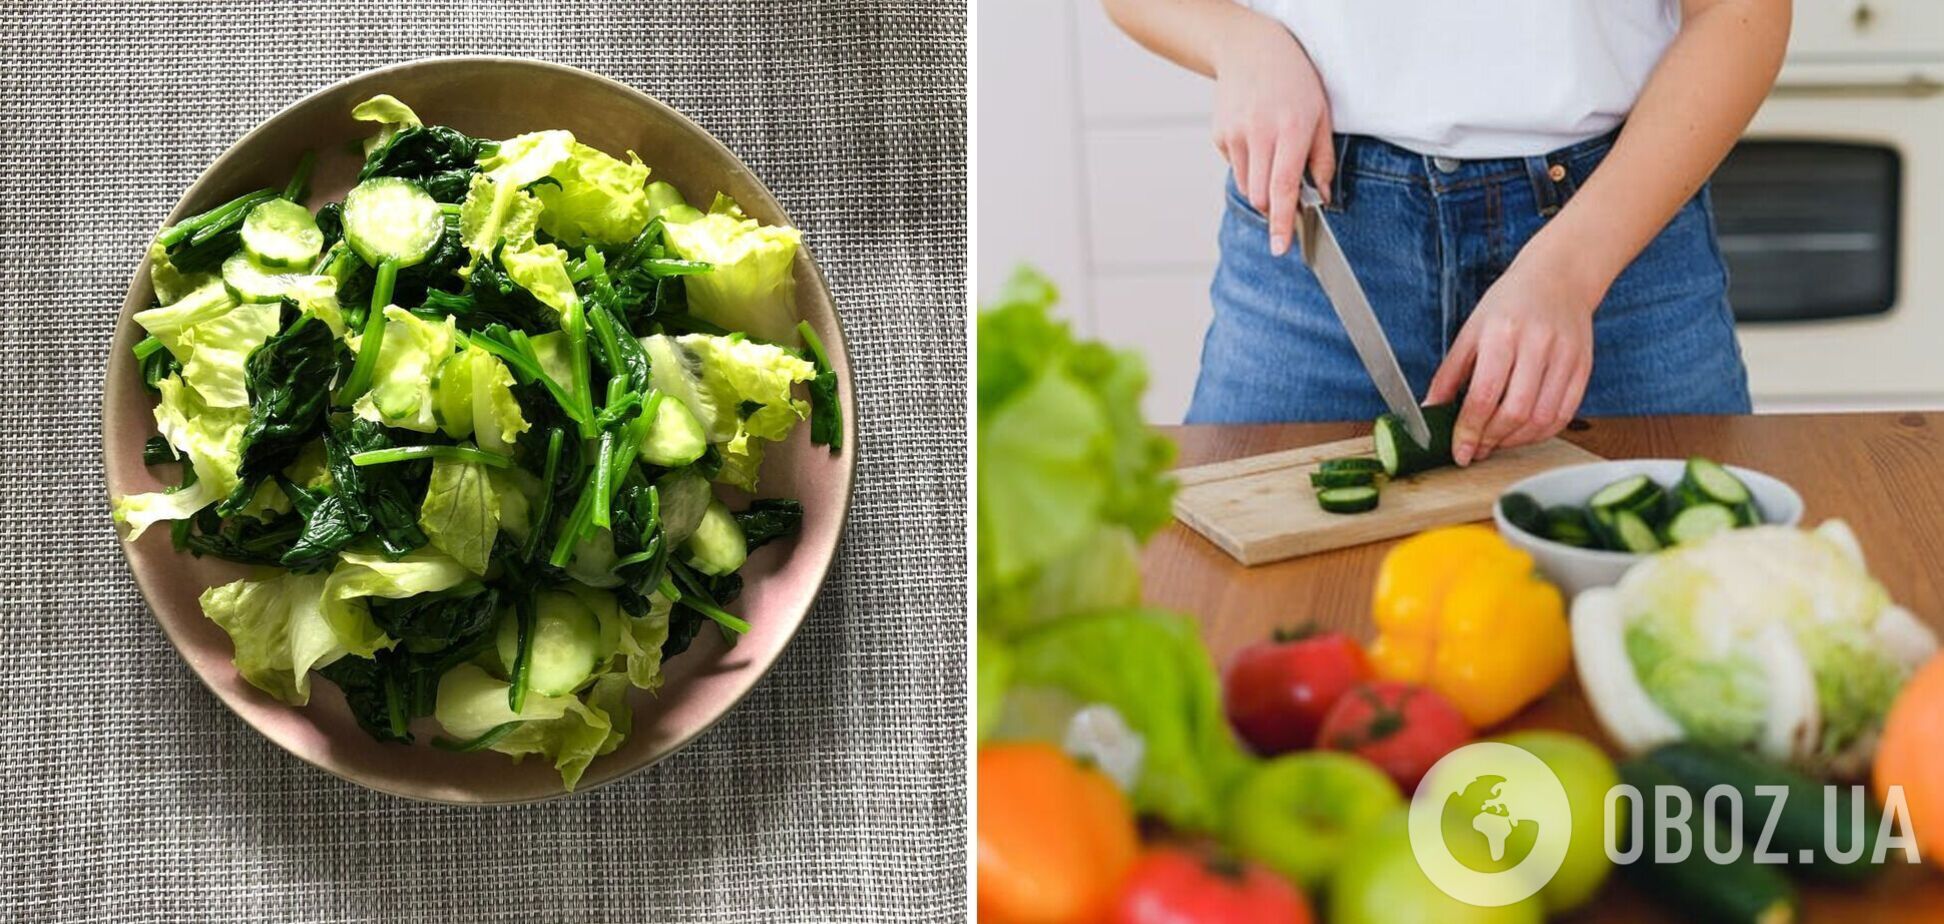 Витаминный весенний салат: из чего приготовить простое блюдо